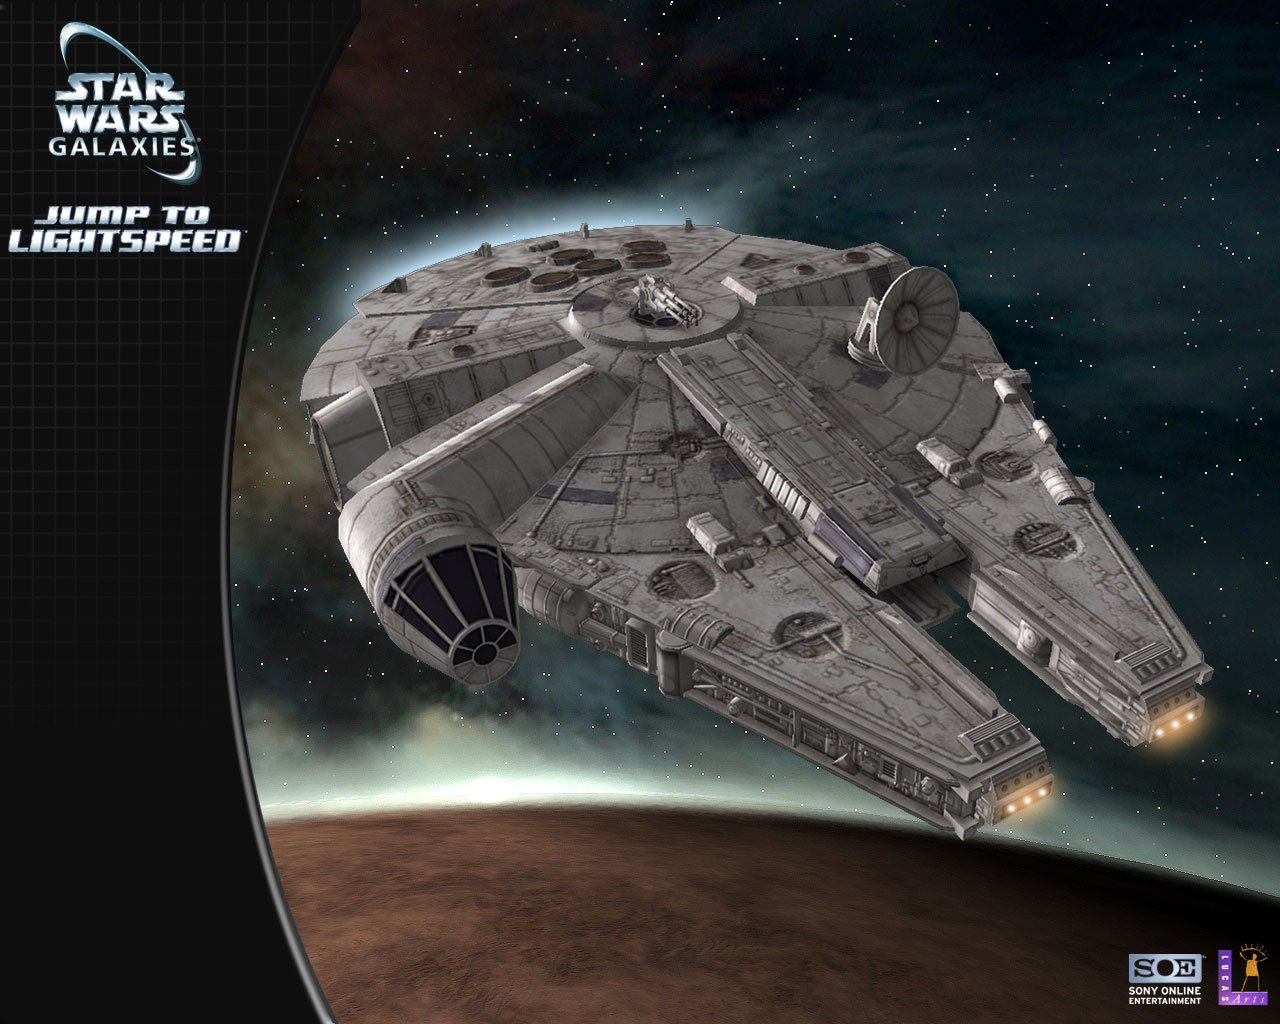 Laden Sie Star Wars Galaxien HD-Desktop-Hintergründe herunter